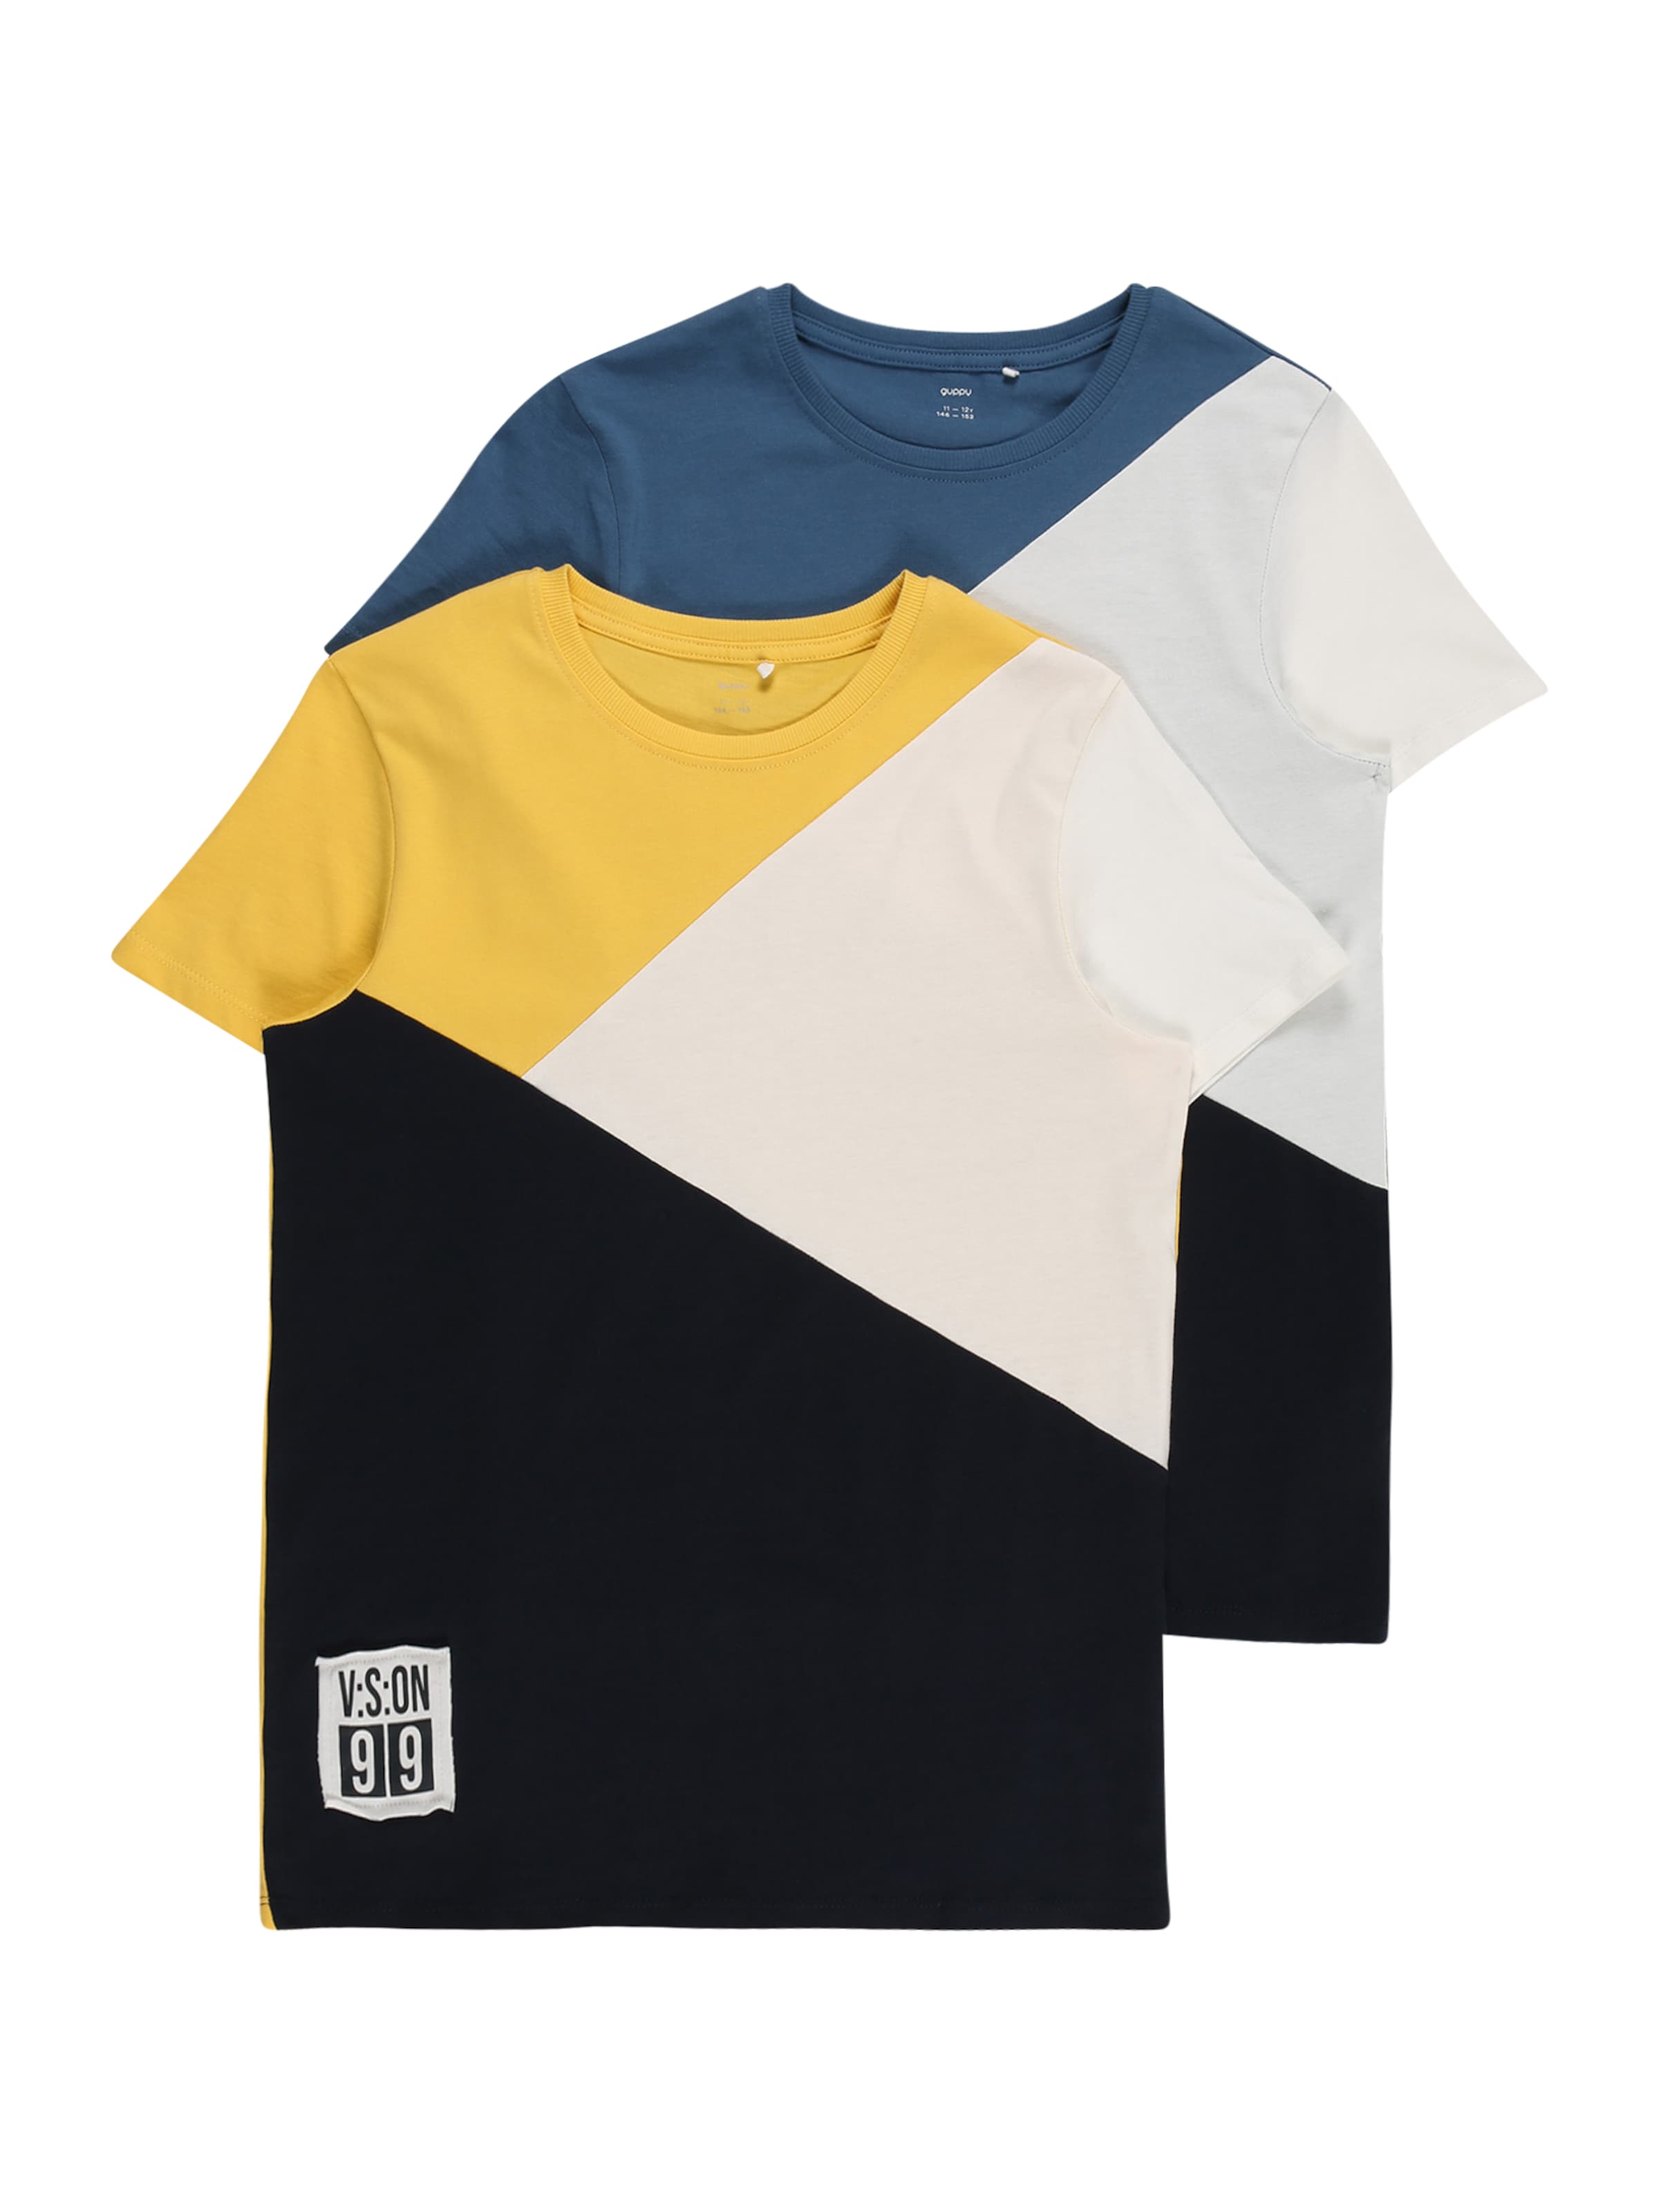 Kinder Teens (Gr. 140-176) Guppy Shirt 'DOMAR' in Gelb, Schwarz, Weiß - OE02769